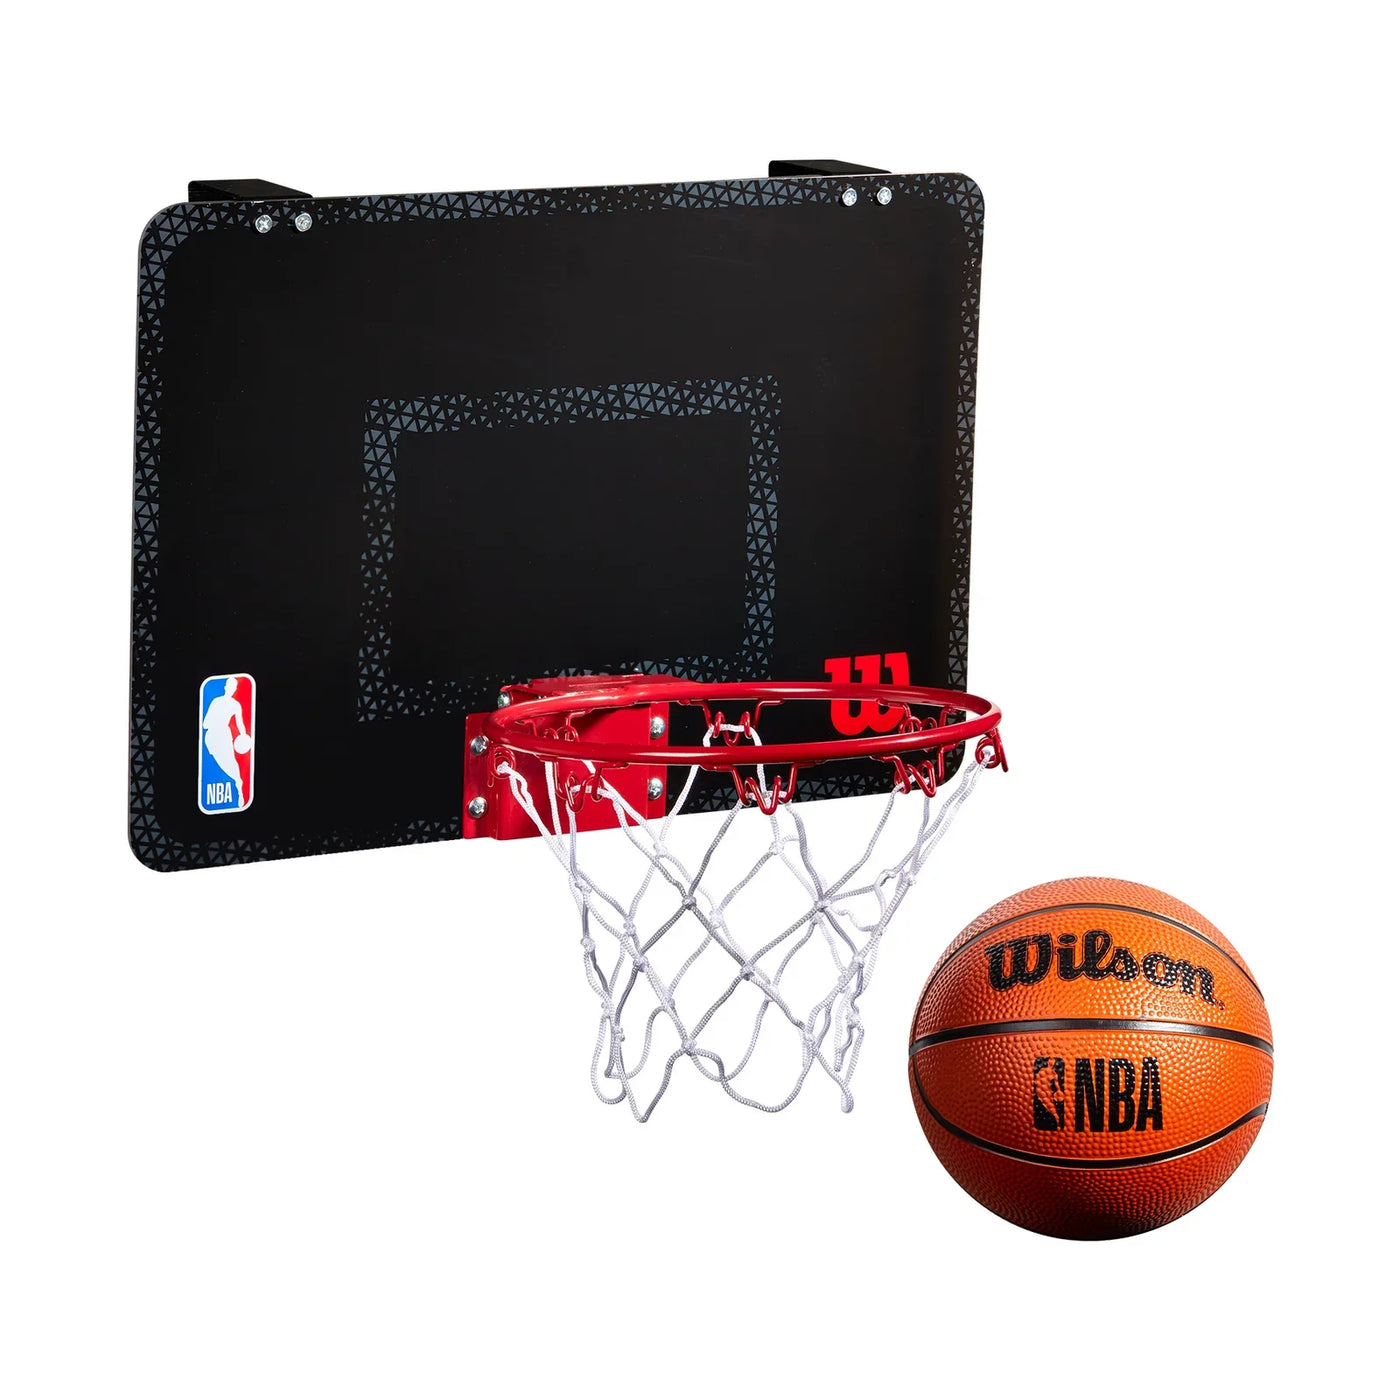 NBA Forge Team Mini Hoop Basketball Backboard